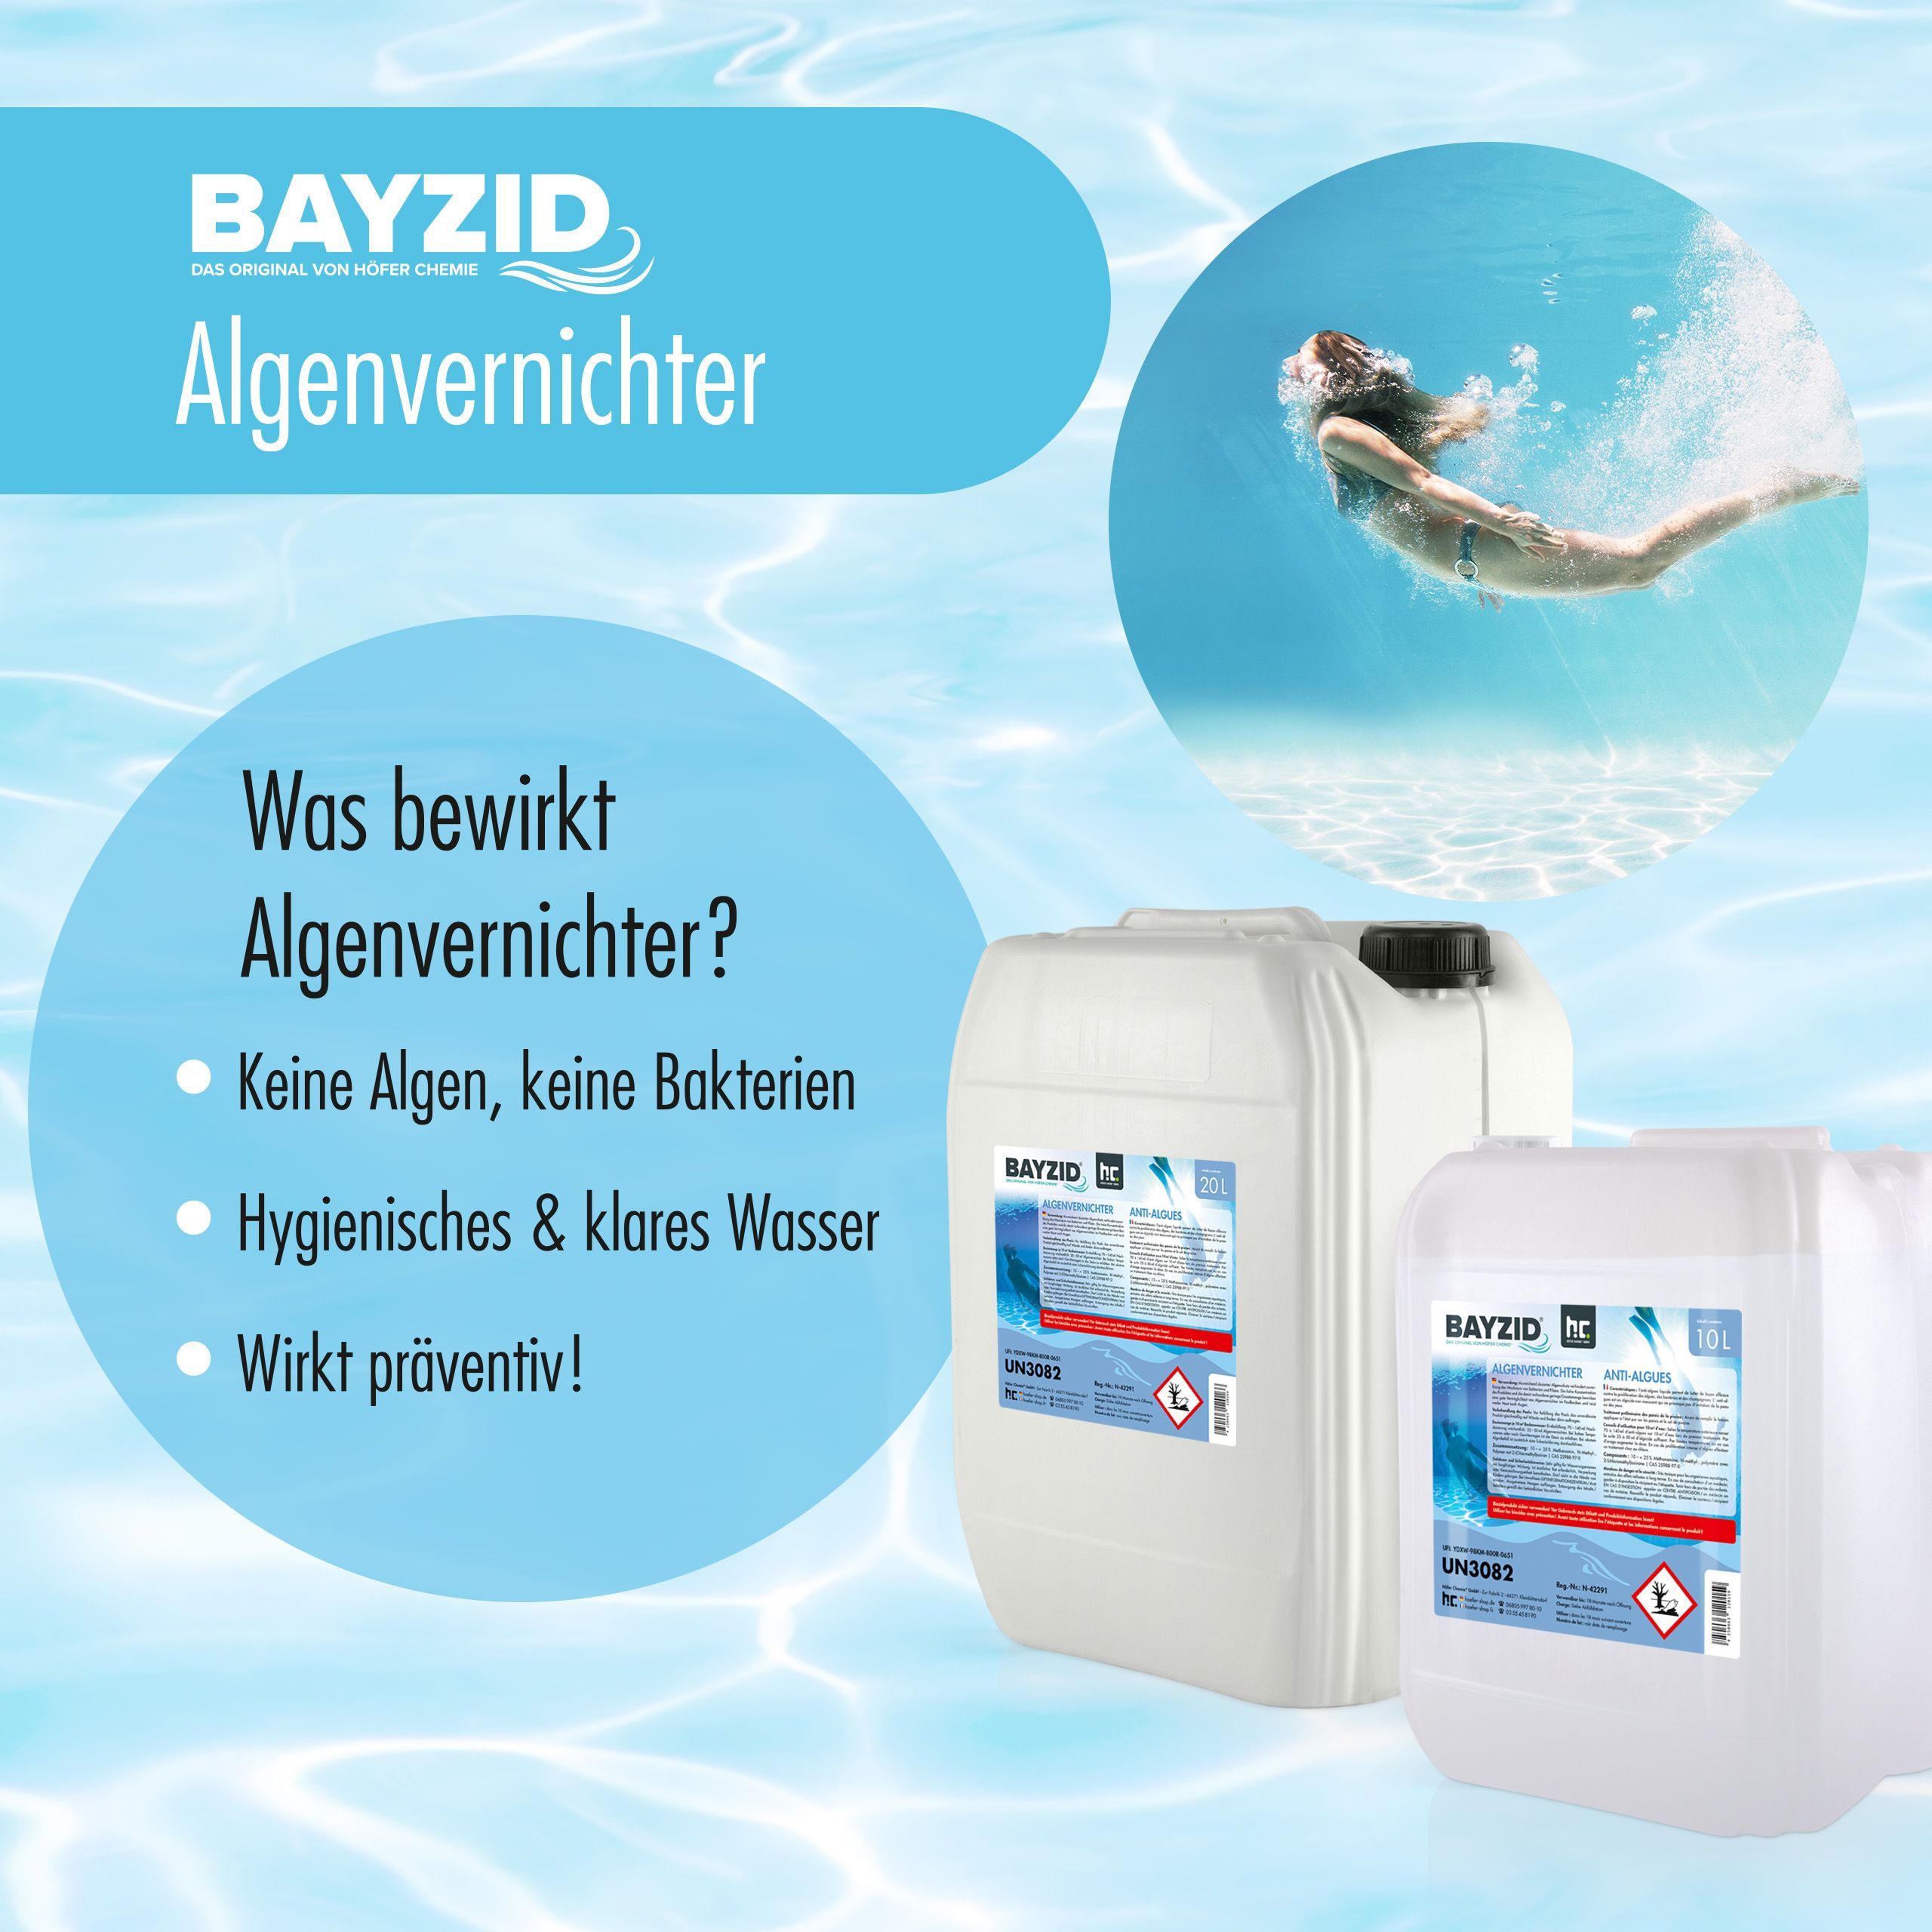 20 L BAYZID® Algicide Prévention des algues